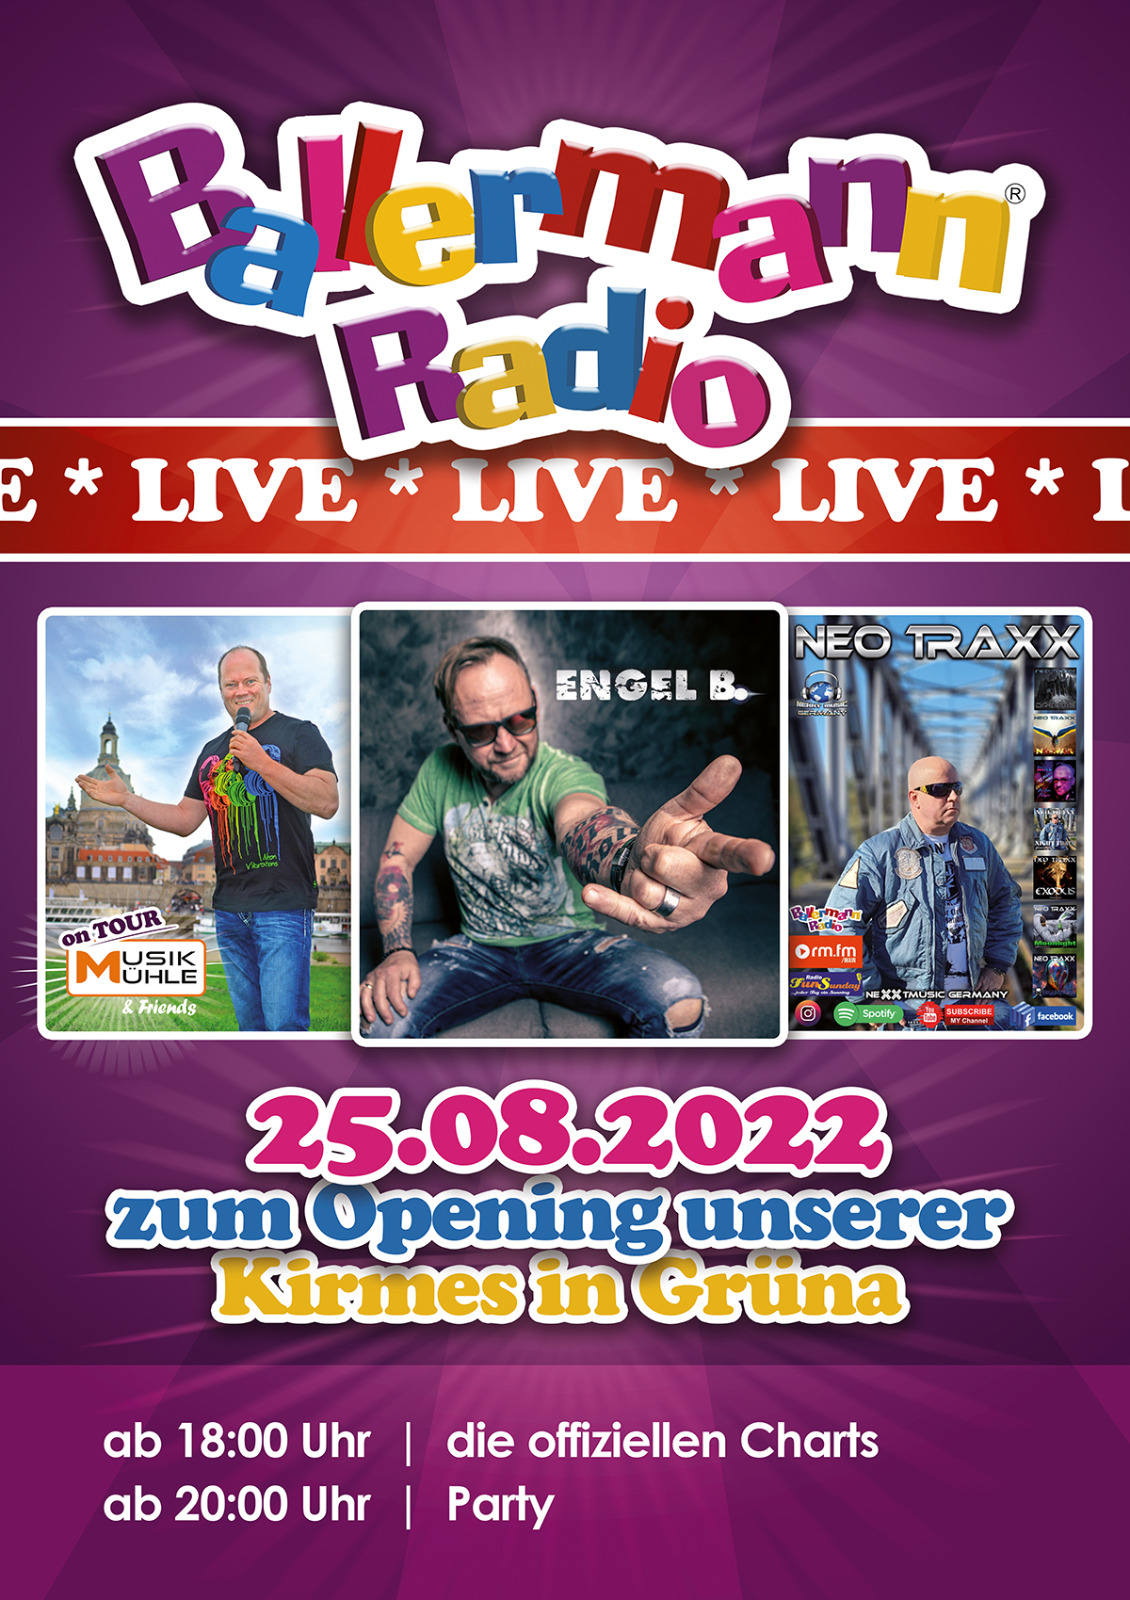 Stadtfest Grüna: Live-Übertragung Mit Ballermann Radio On Tour